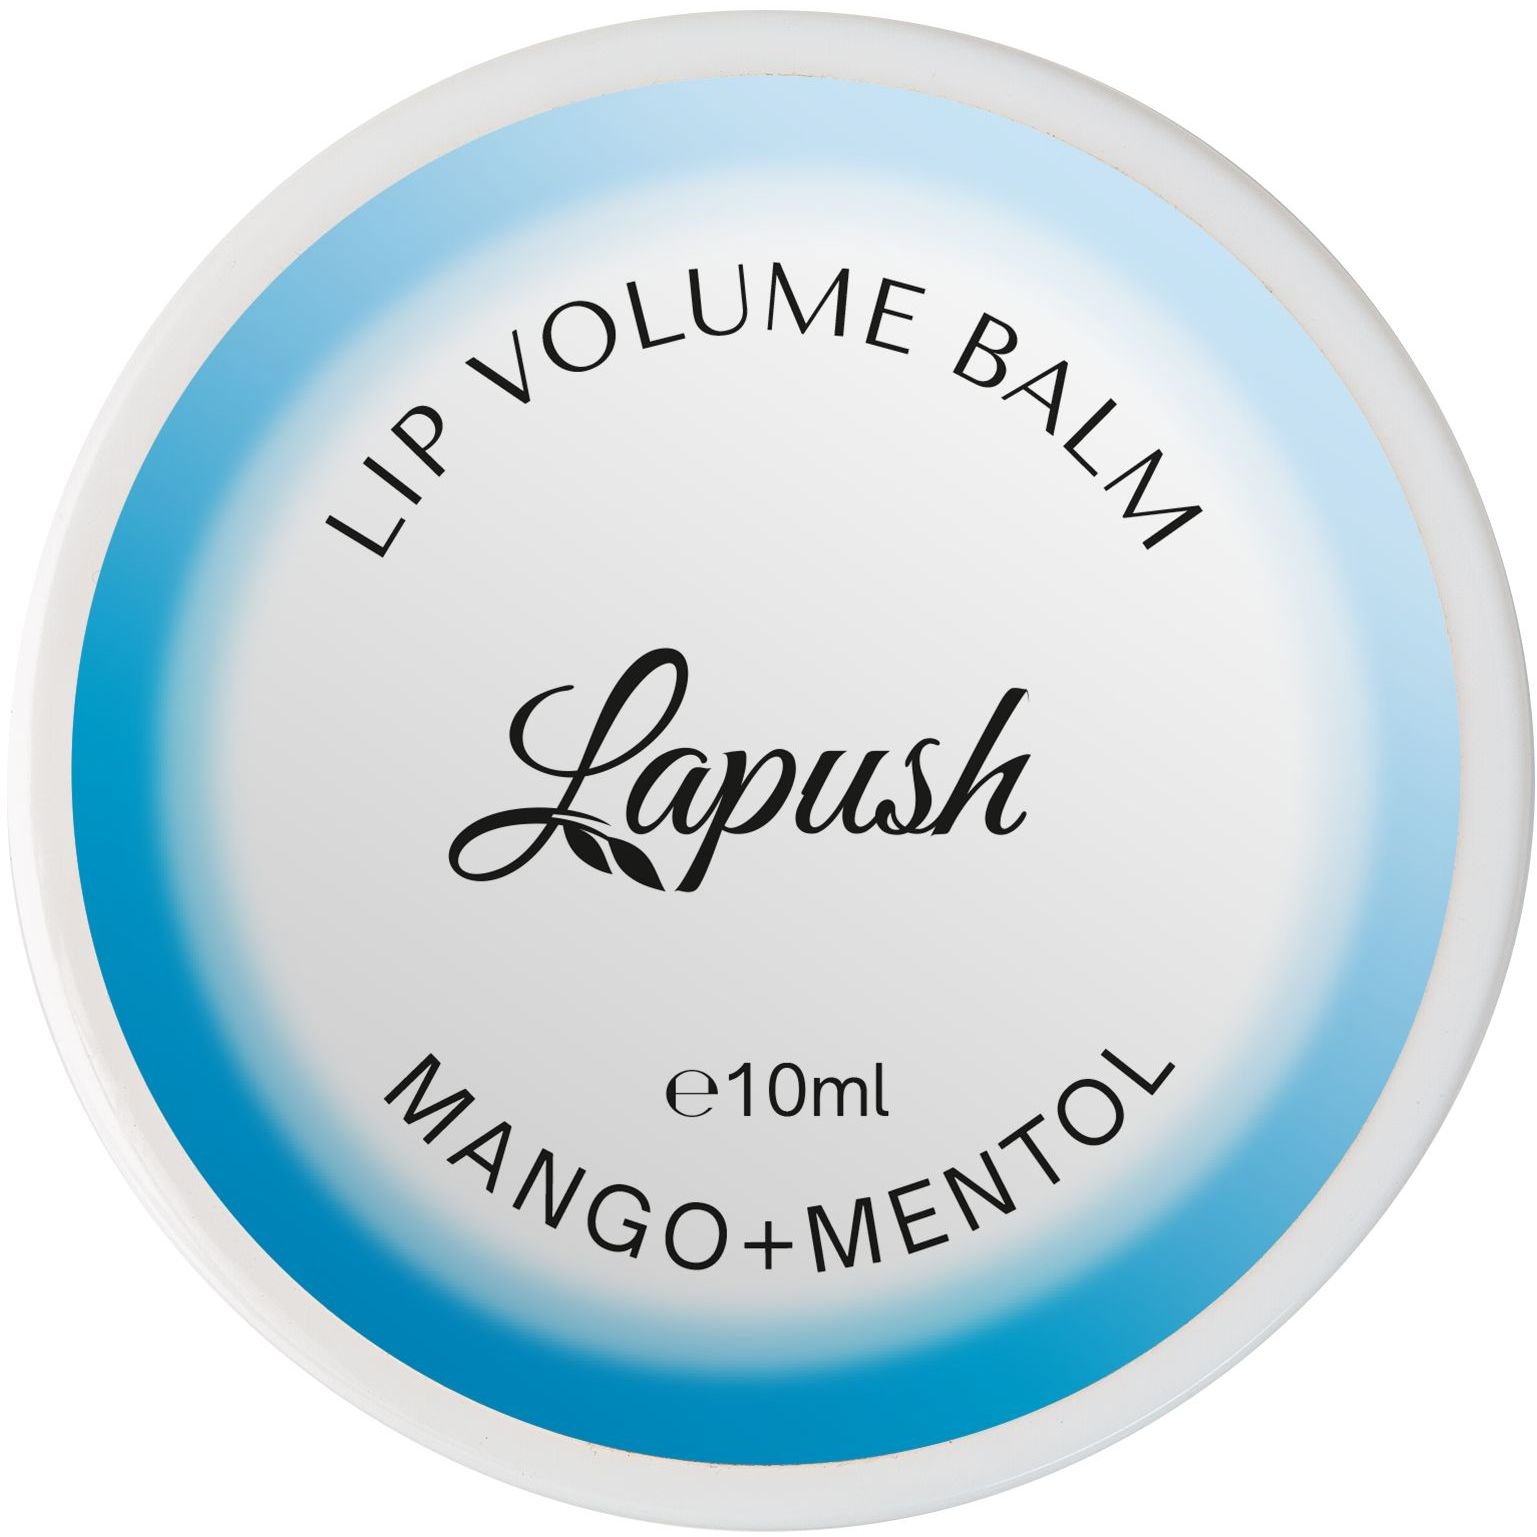 Бальзам для губ Lapush Mango + Mentol, з ефектом об’єму, 10 мл - фото 1